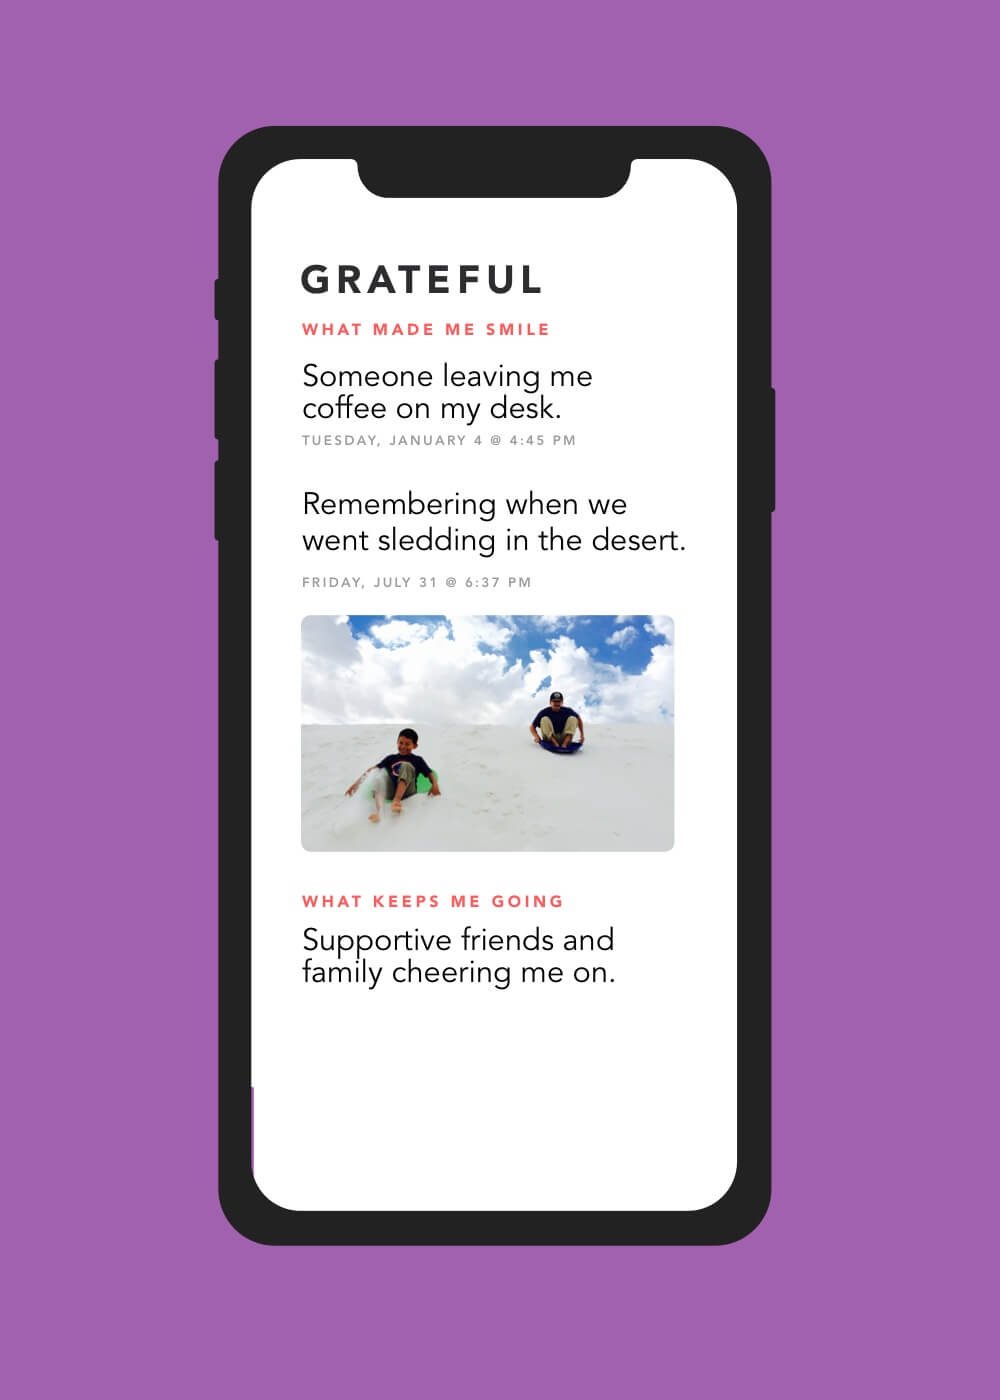 Grateful App: Main Screen